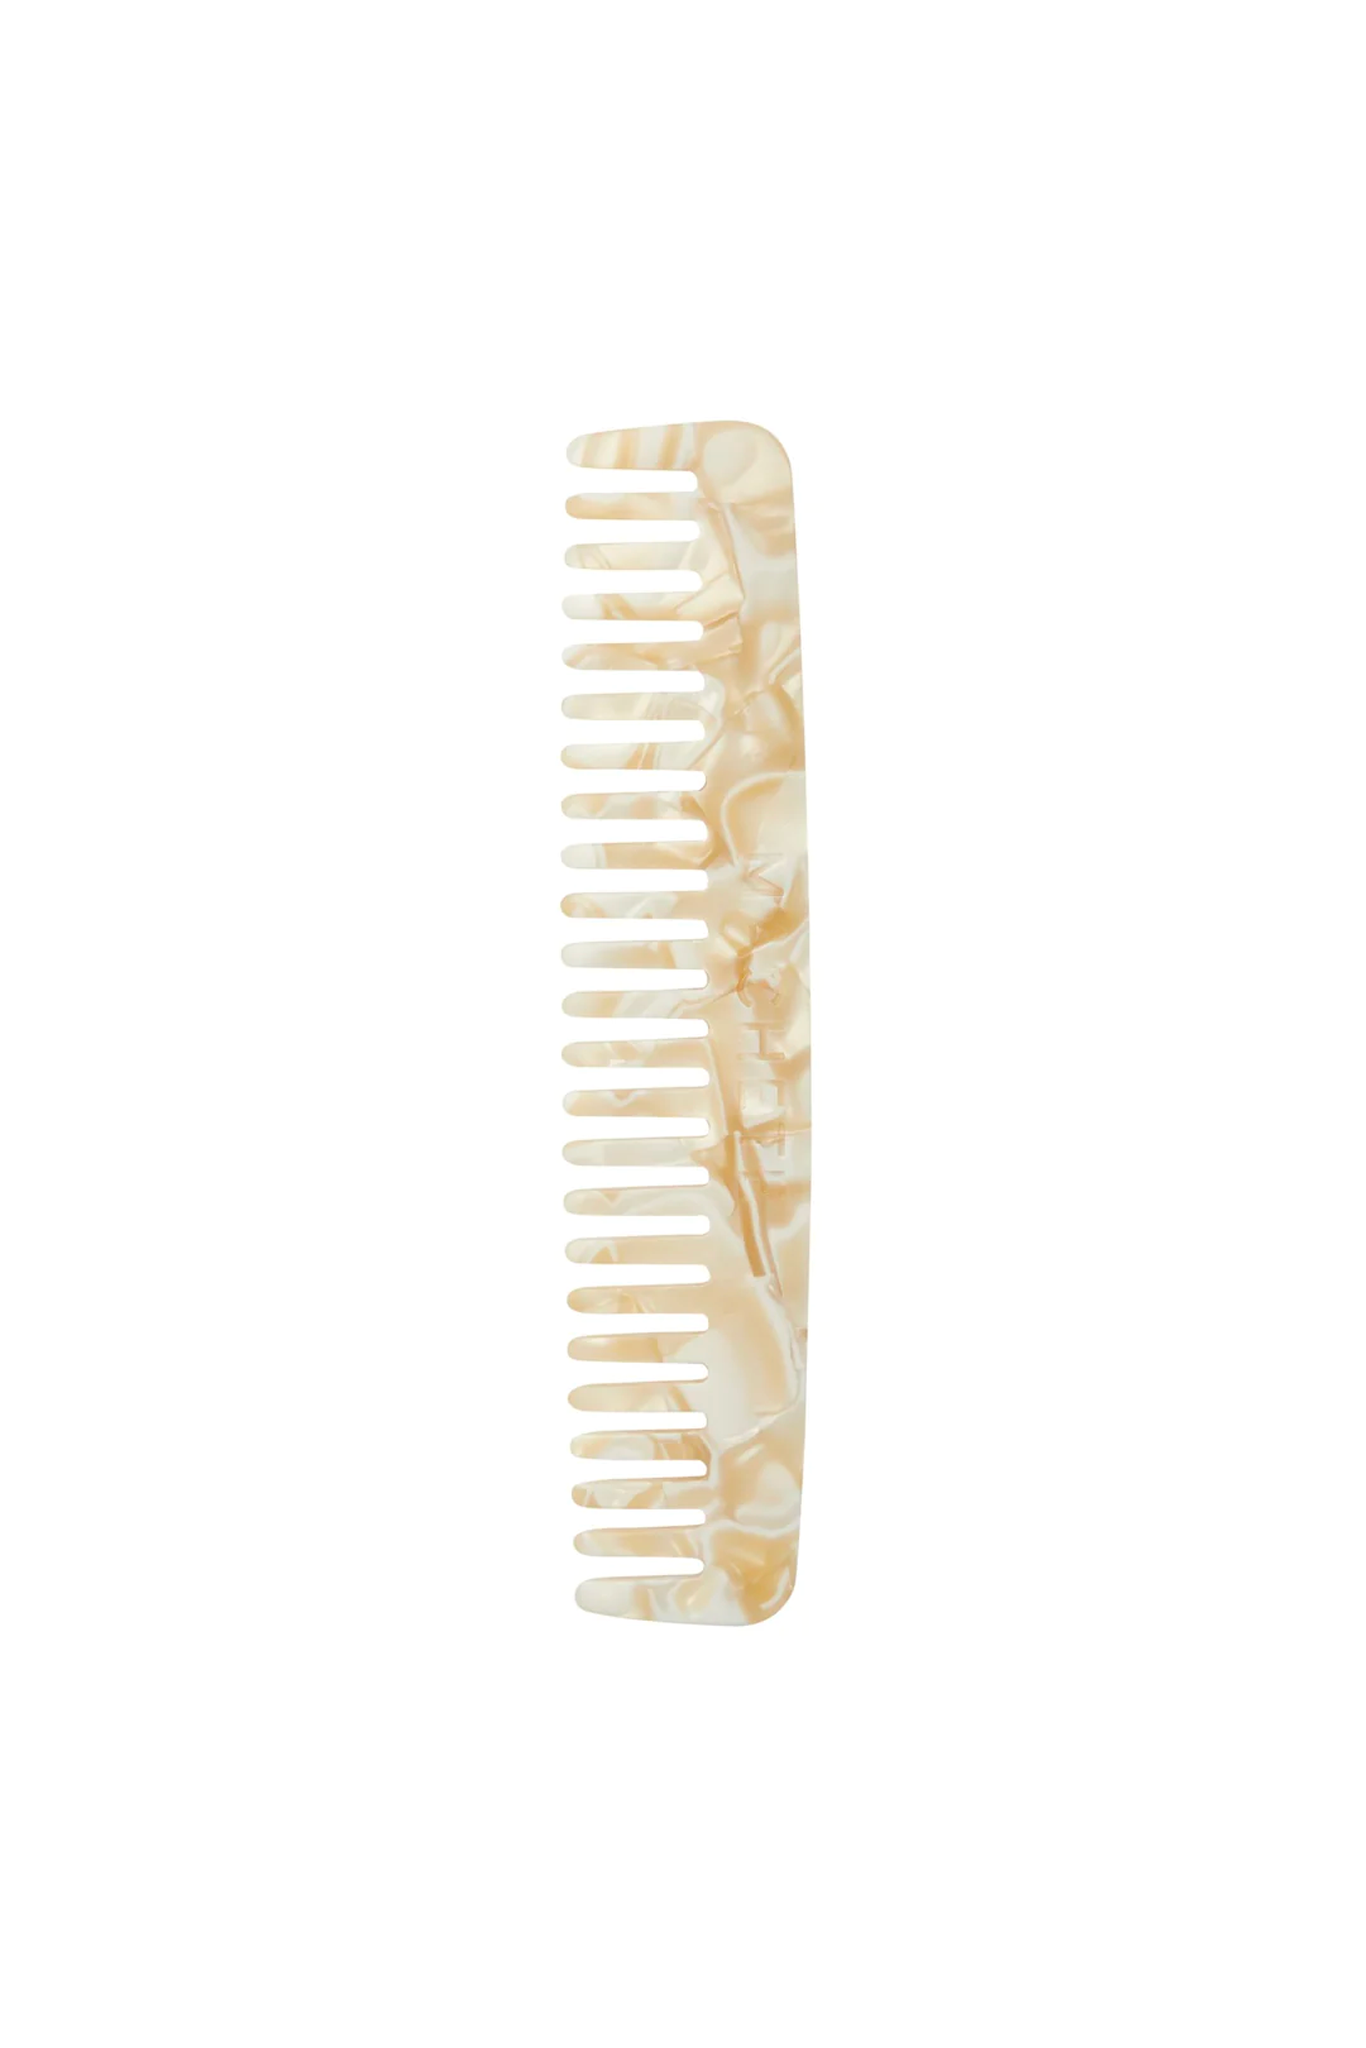 Ivory No. 3 Comb